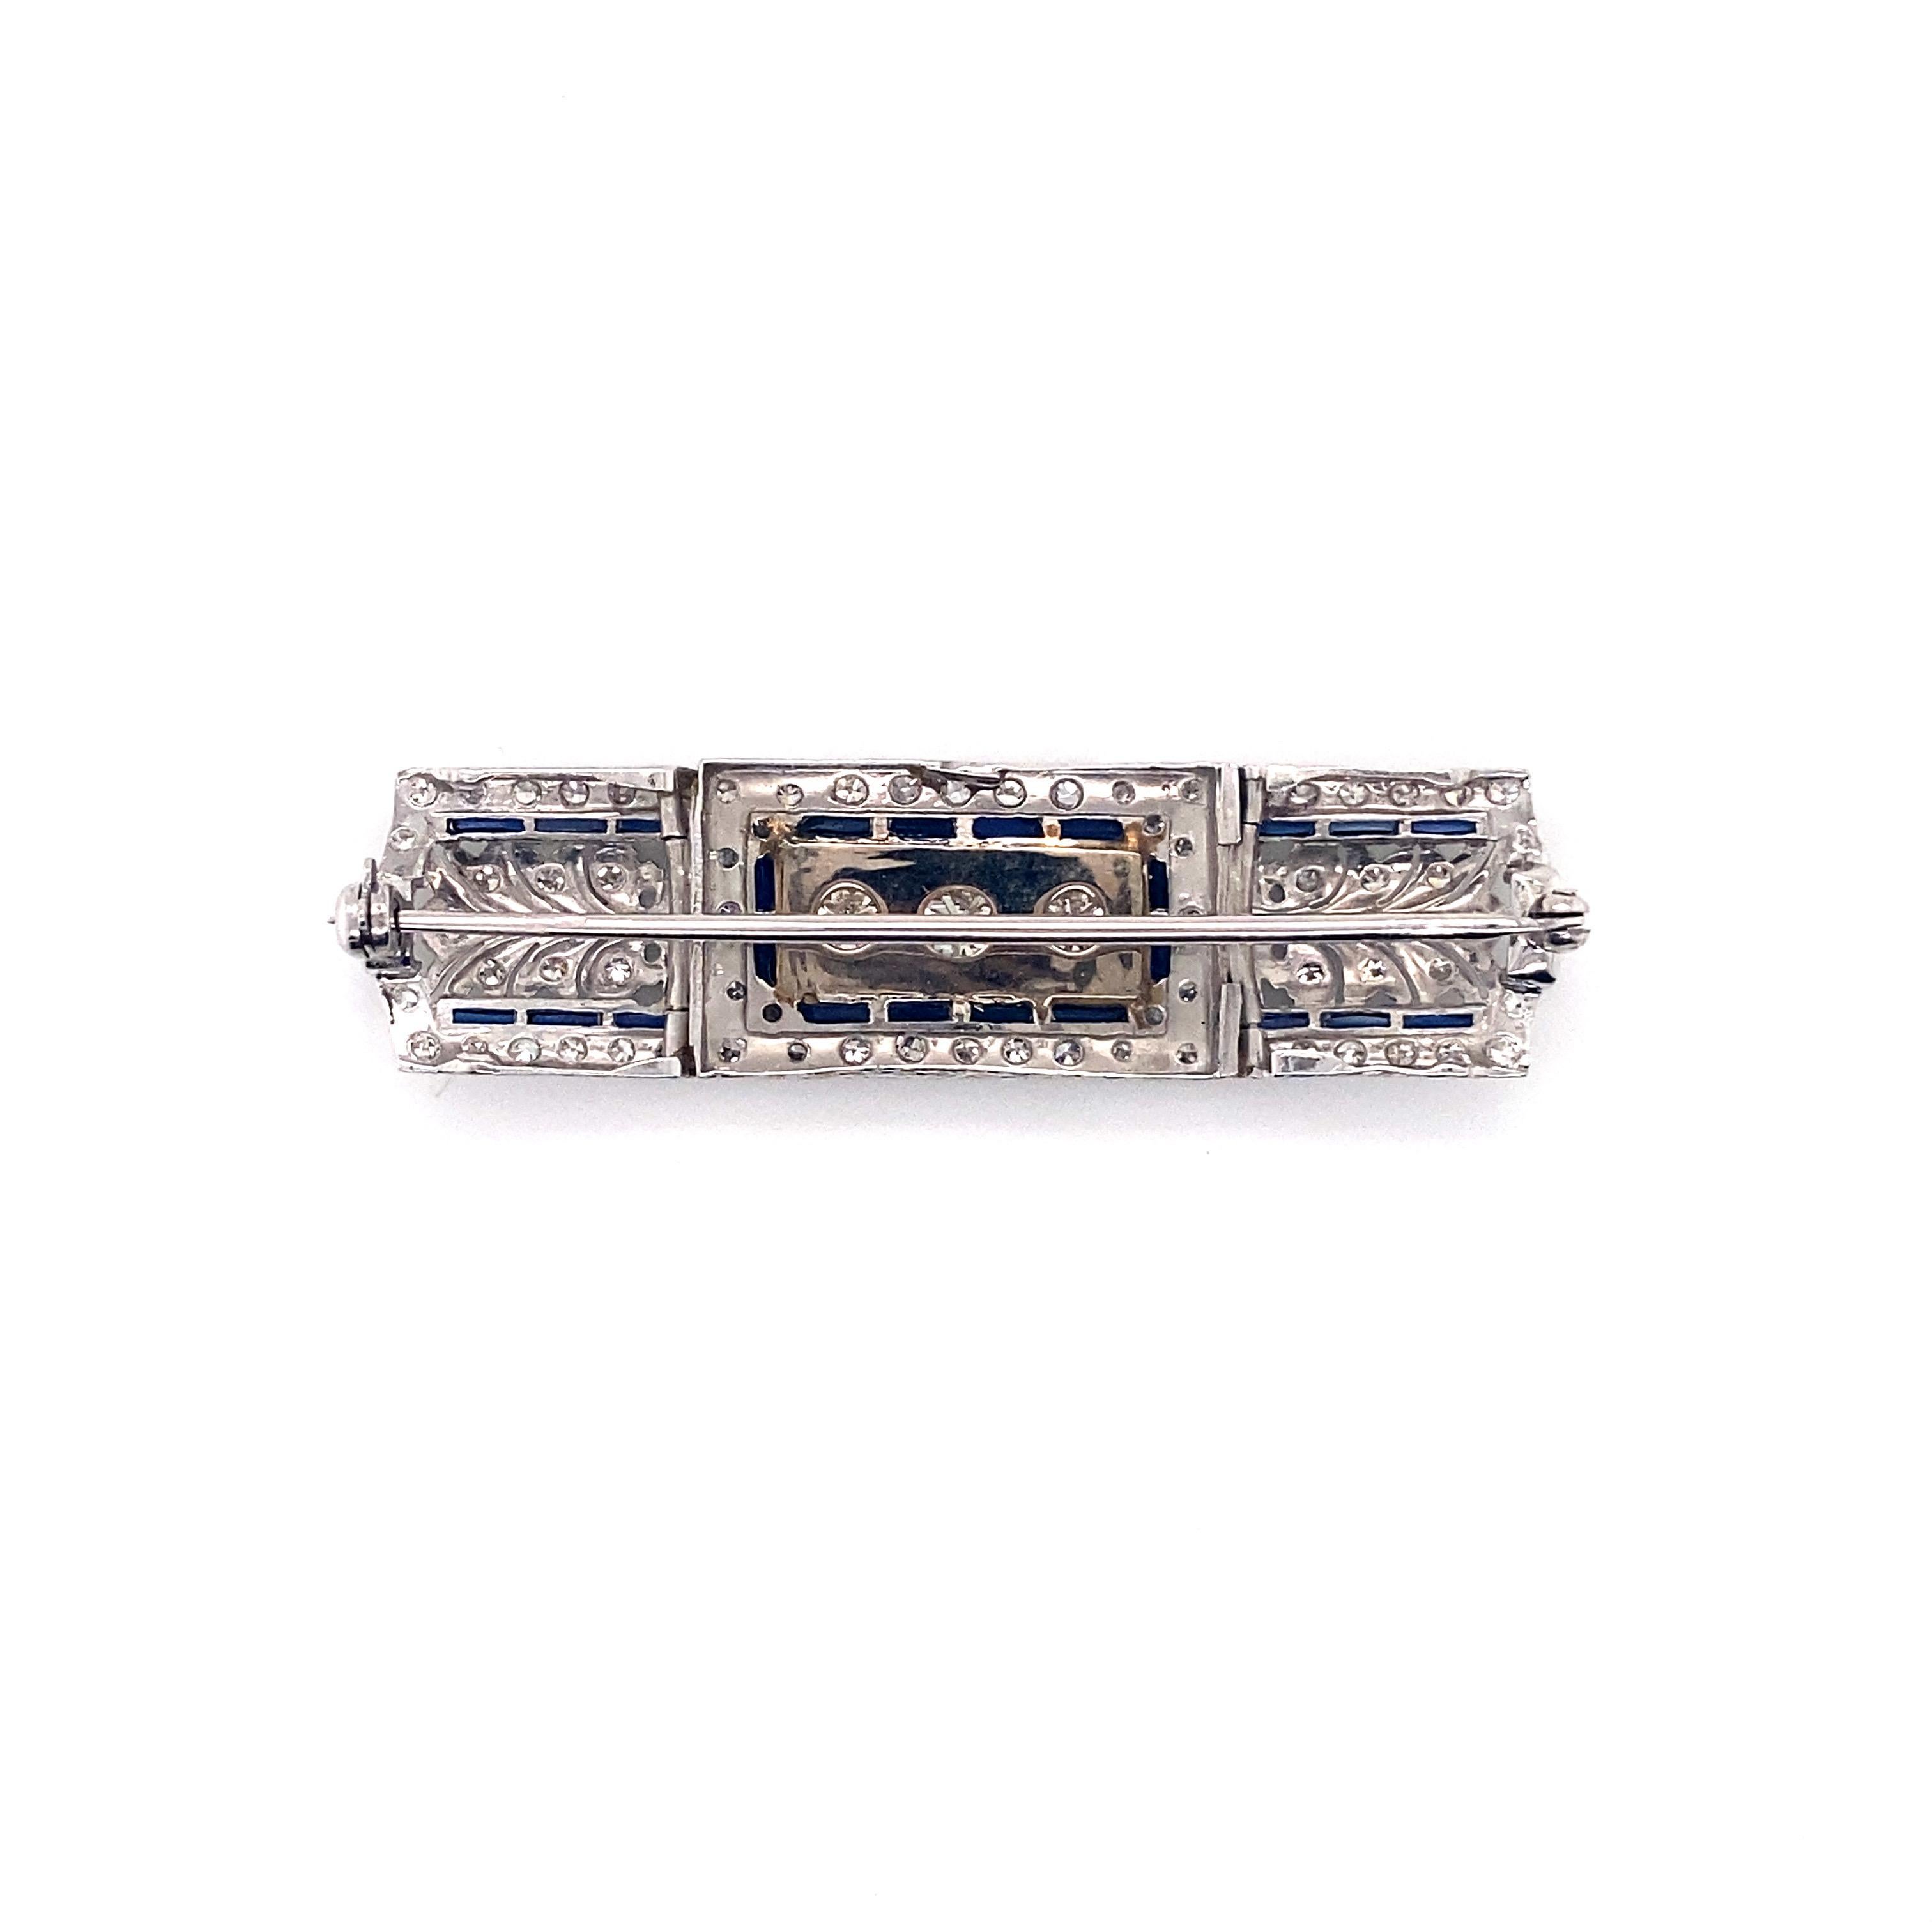 Als exquisites Beispiel für die Eleganz des Art déco stammt diese Vintage-Nadel aus Platin aus dem frühen 20. Jahrhundert. Das Herzstück ist ein prächtiges Trio aus Diamanten im Altminenschliff mit einem Gesamtgewicht von etwa 1,00 Karat. Diese drei